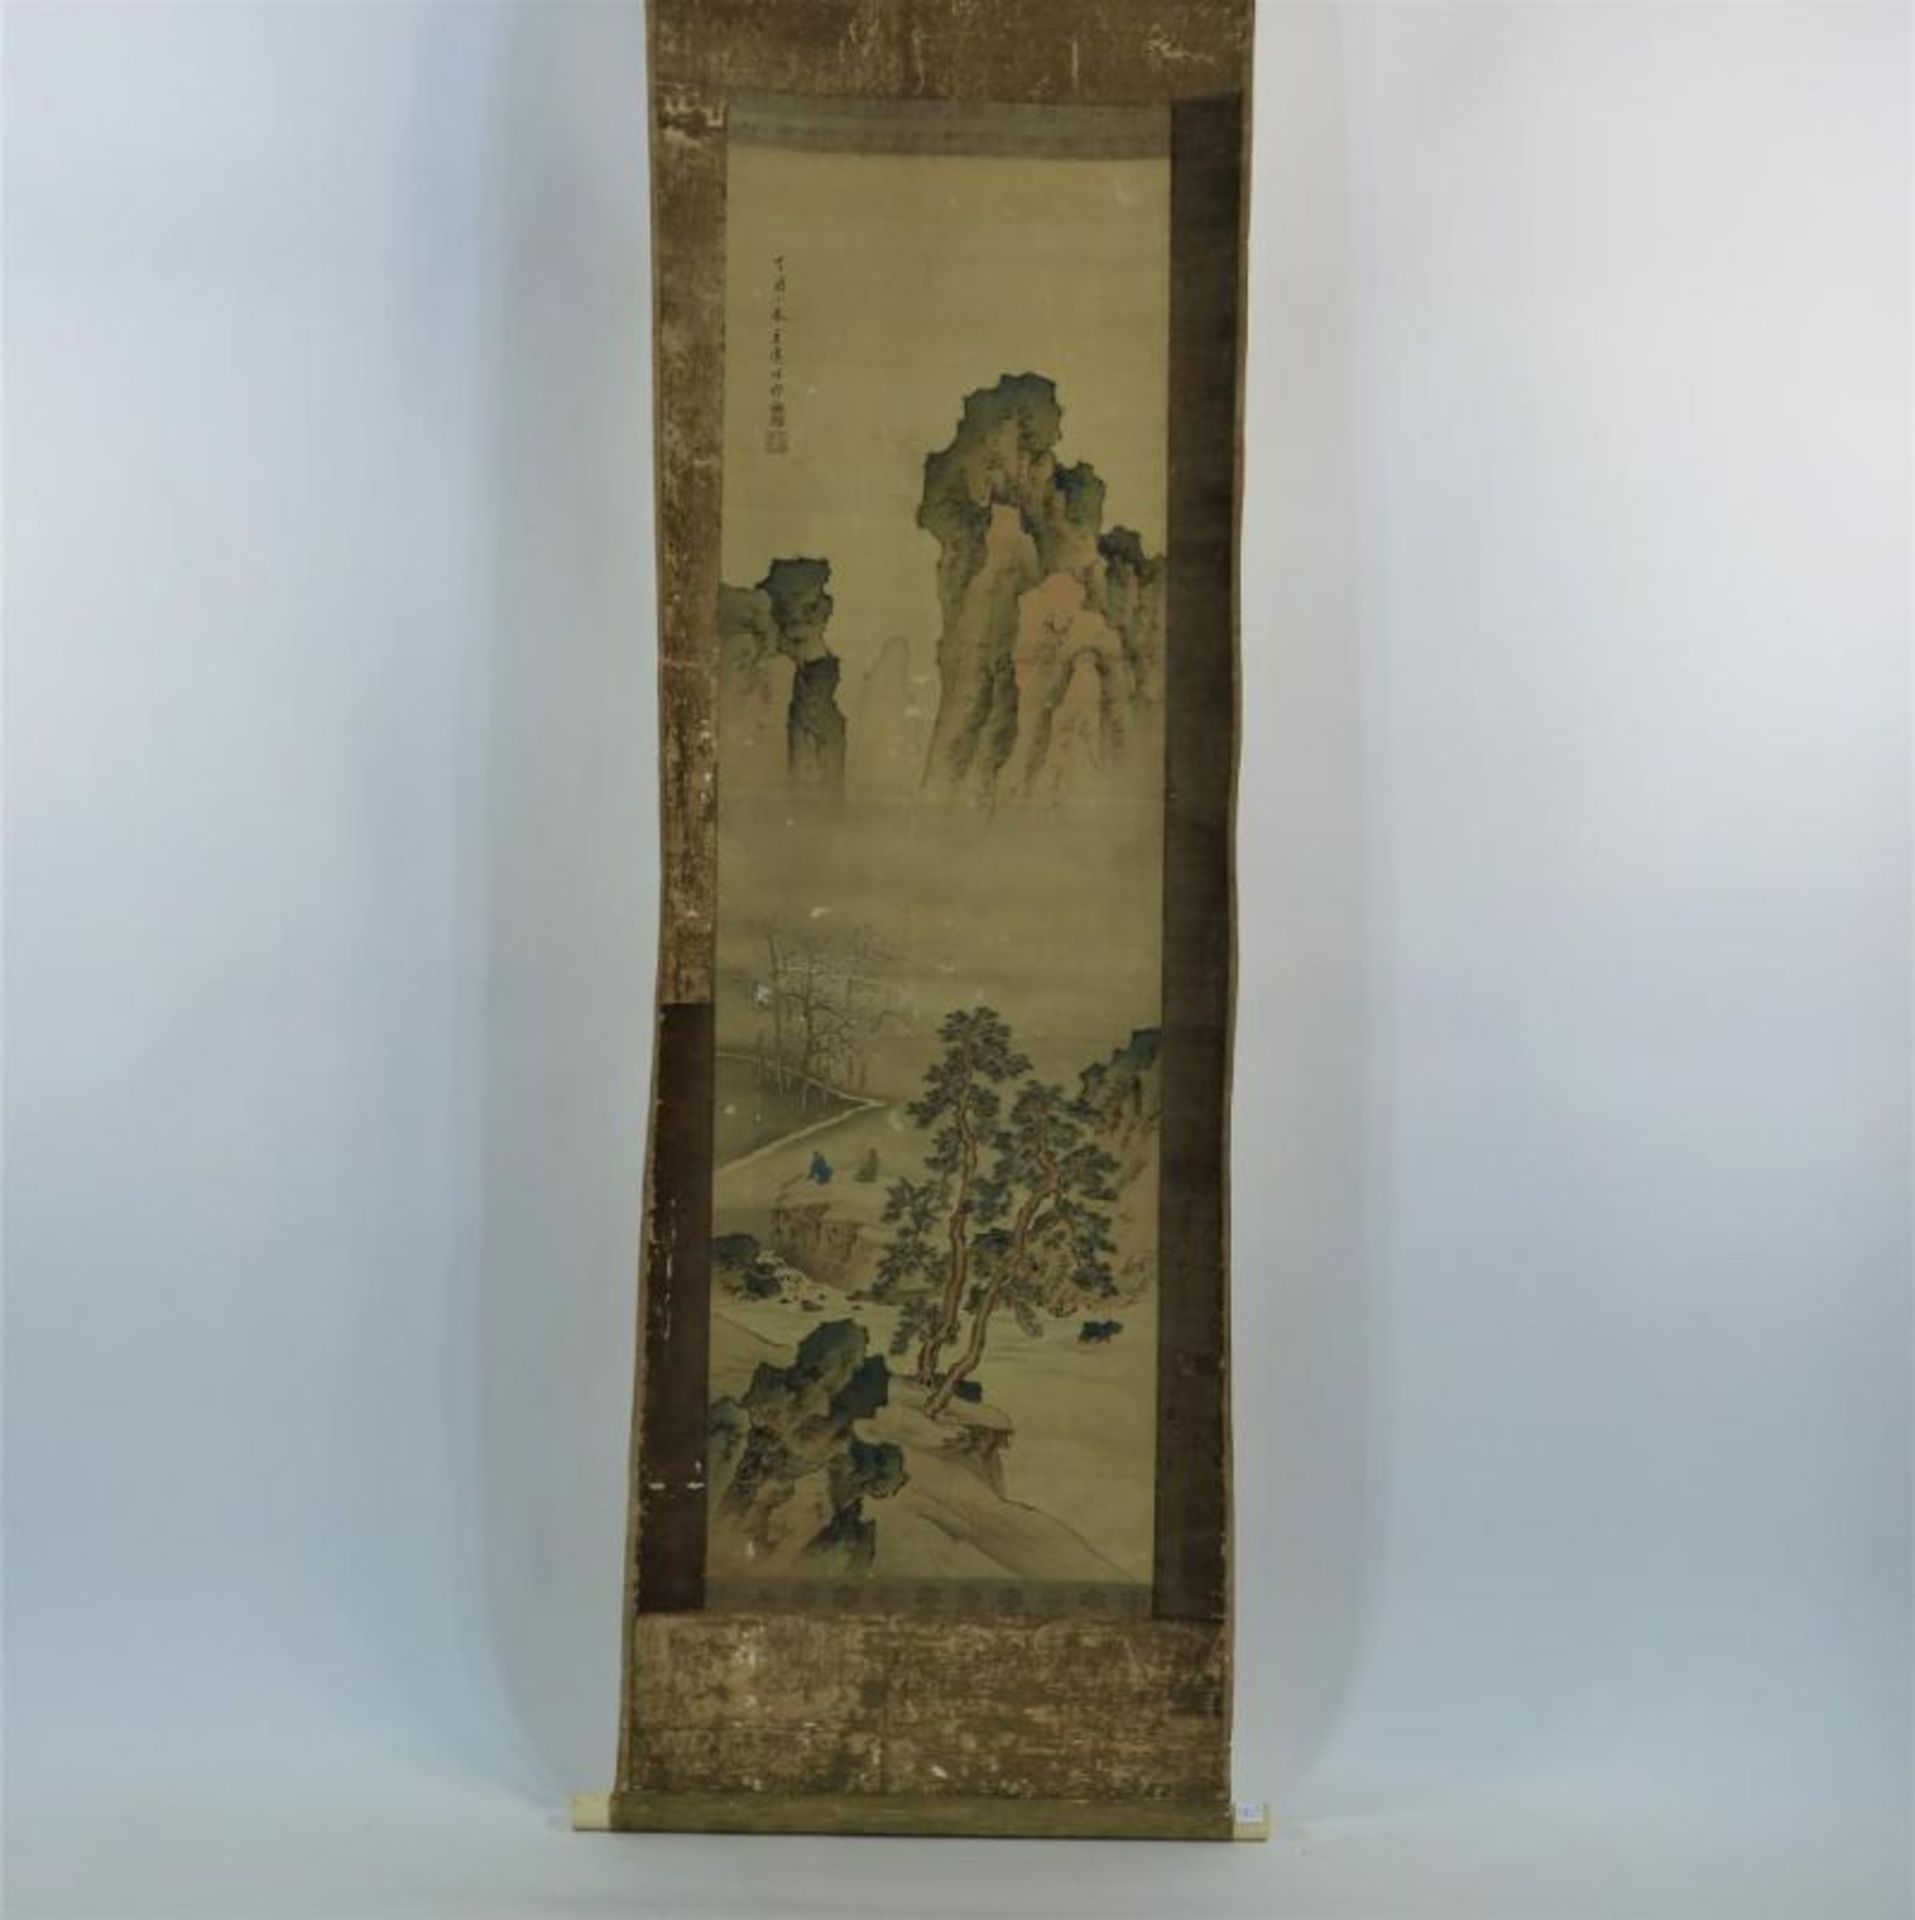 KYOSHO, TACHIHARA (1786-1840), ges. l.b., twee mannen in berglandschap, scroll, 180 x 50 cm. Kyosho,